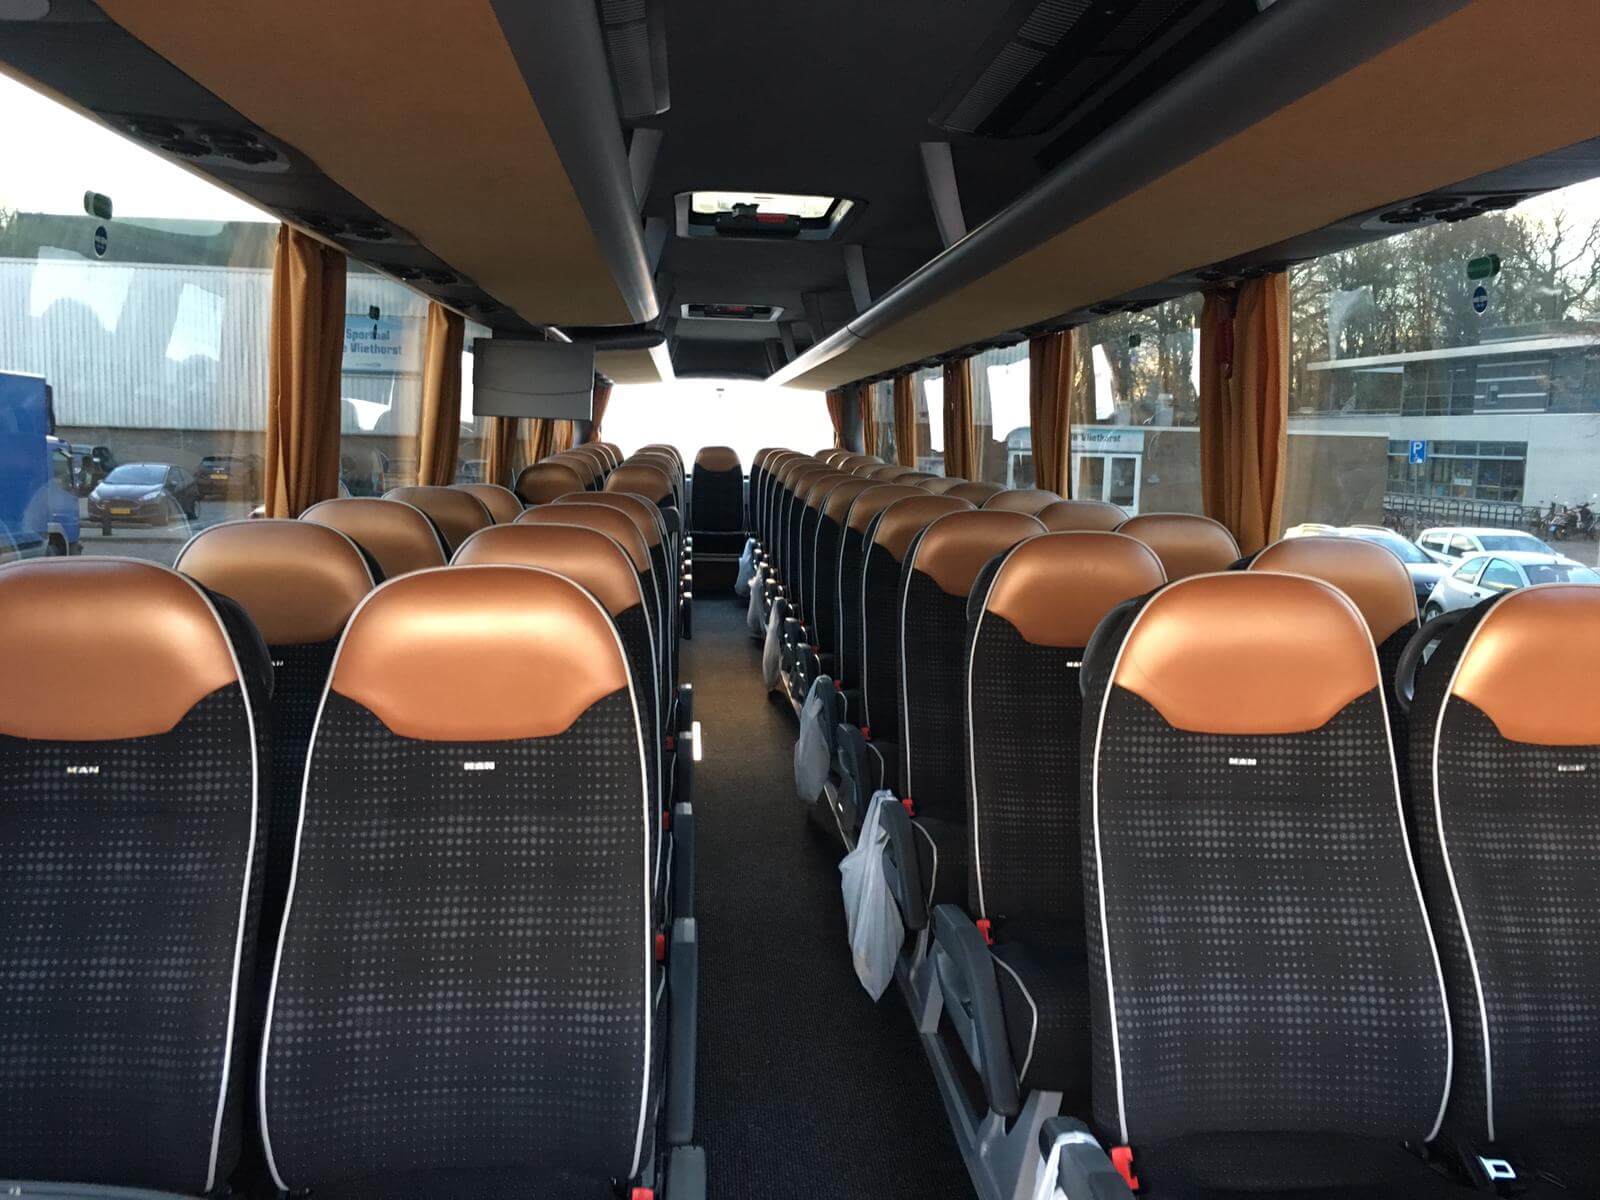 Huur een Standaard Bus -Touringcar (MAN LION'S COACH 2019) met 50 stoelen van Van der Laan Touringcar B.V. uit Nieuwkoop 